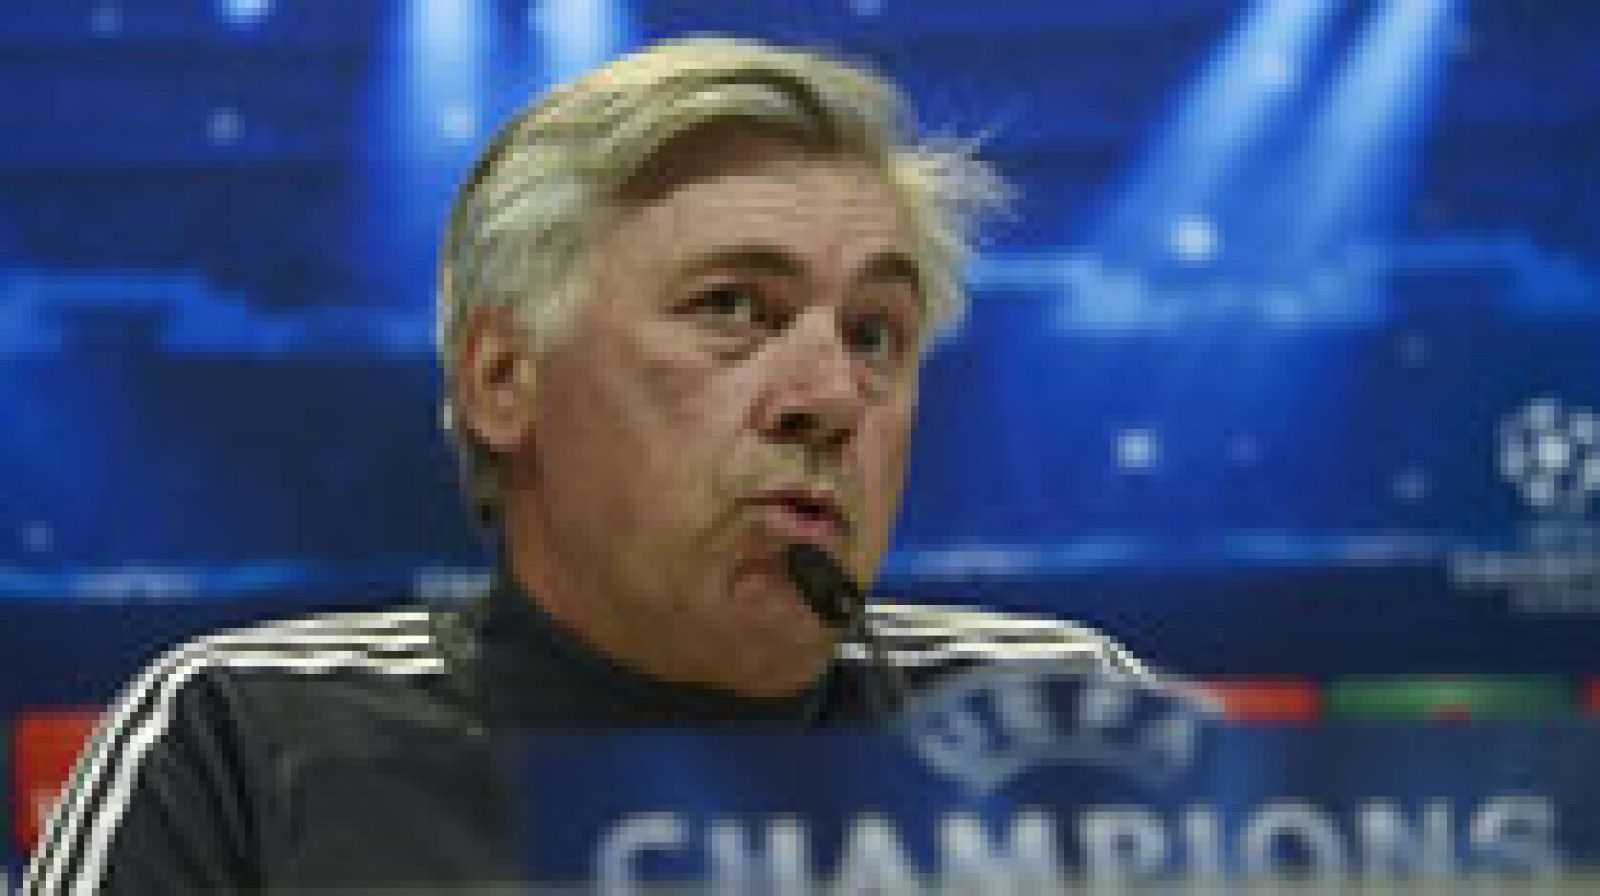 El entrenador del Real Madrid, Carlo Ancelotti, ha explicado el motivo de la ausencia de Khedira en la convocatoria para el partido de Champions ante el Basilea. El alemán sufre una molestia en la cadera.